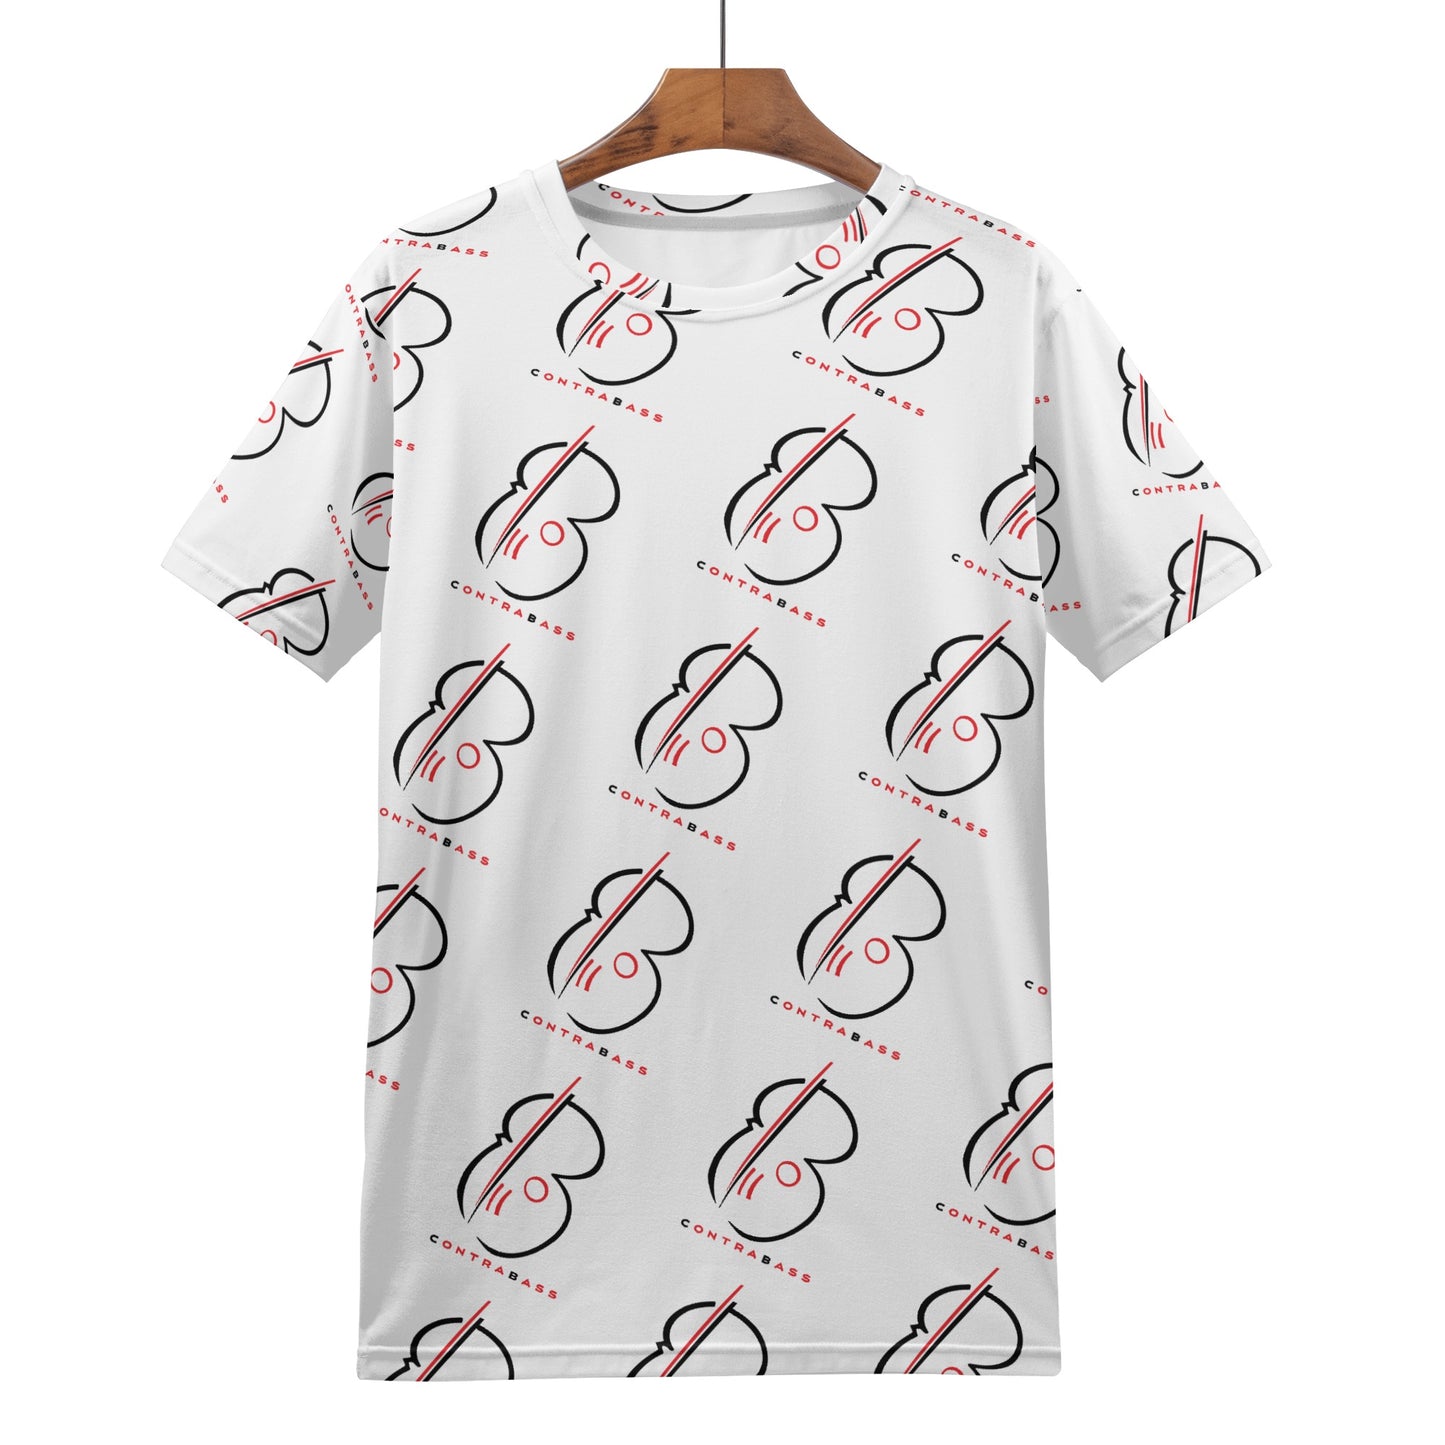 "ContraBASS" Men's All Over Print T-shirt